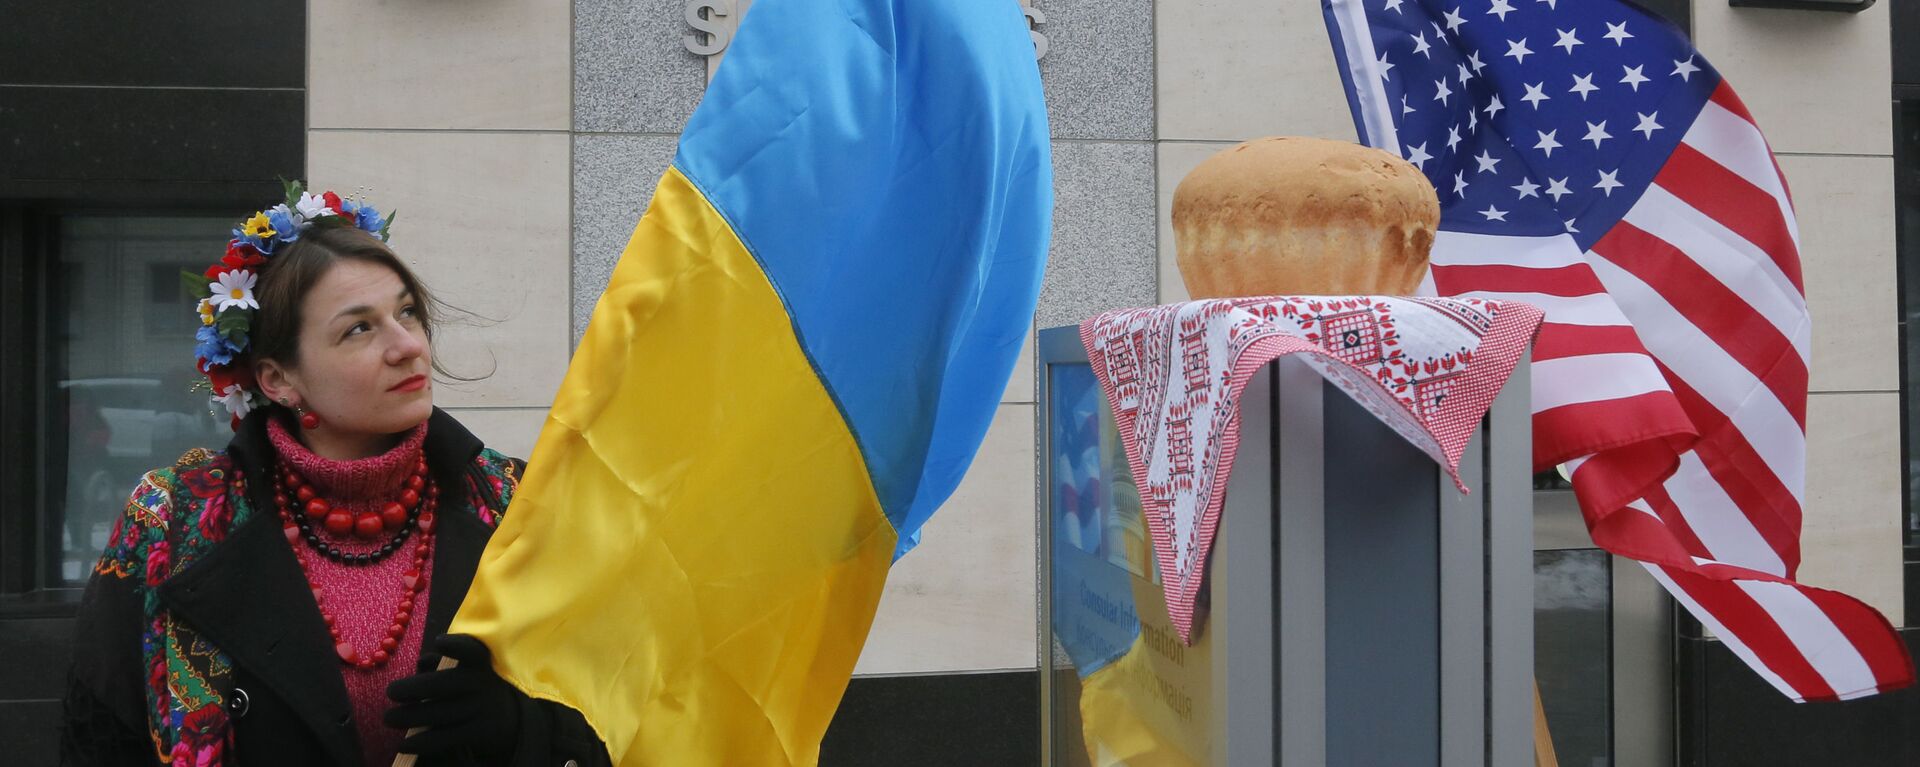 Девушка с украинским флагом у посольства США в Киеве  - Sputnik Узбекистан, 1920, 17.09.2021